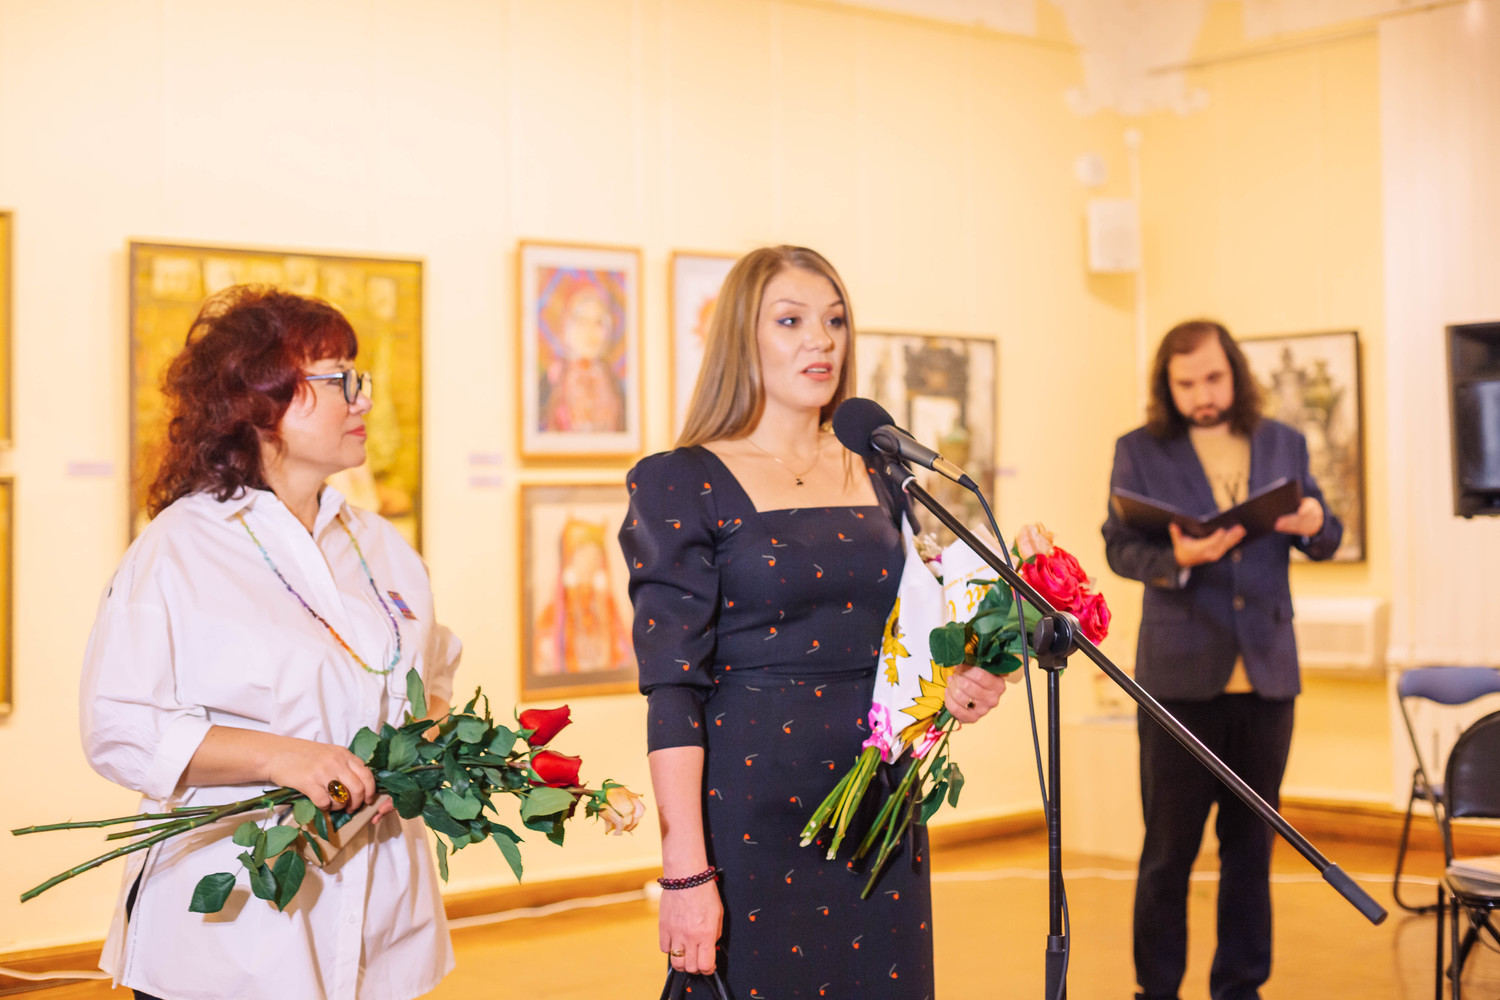 Выставка «Женщина в искусстве» о духовном наследии народов открылась в Хабаровске: фото